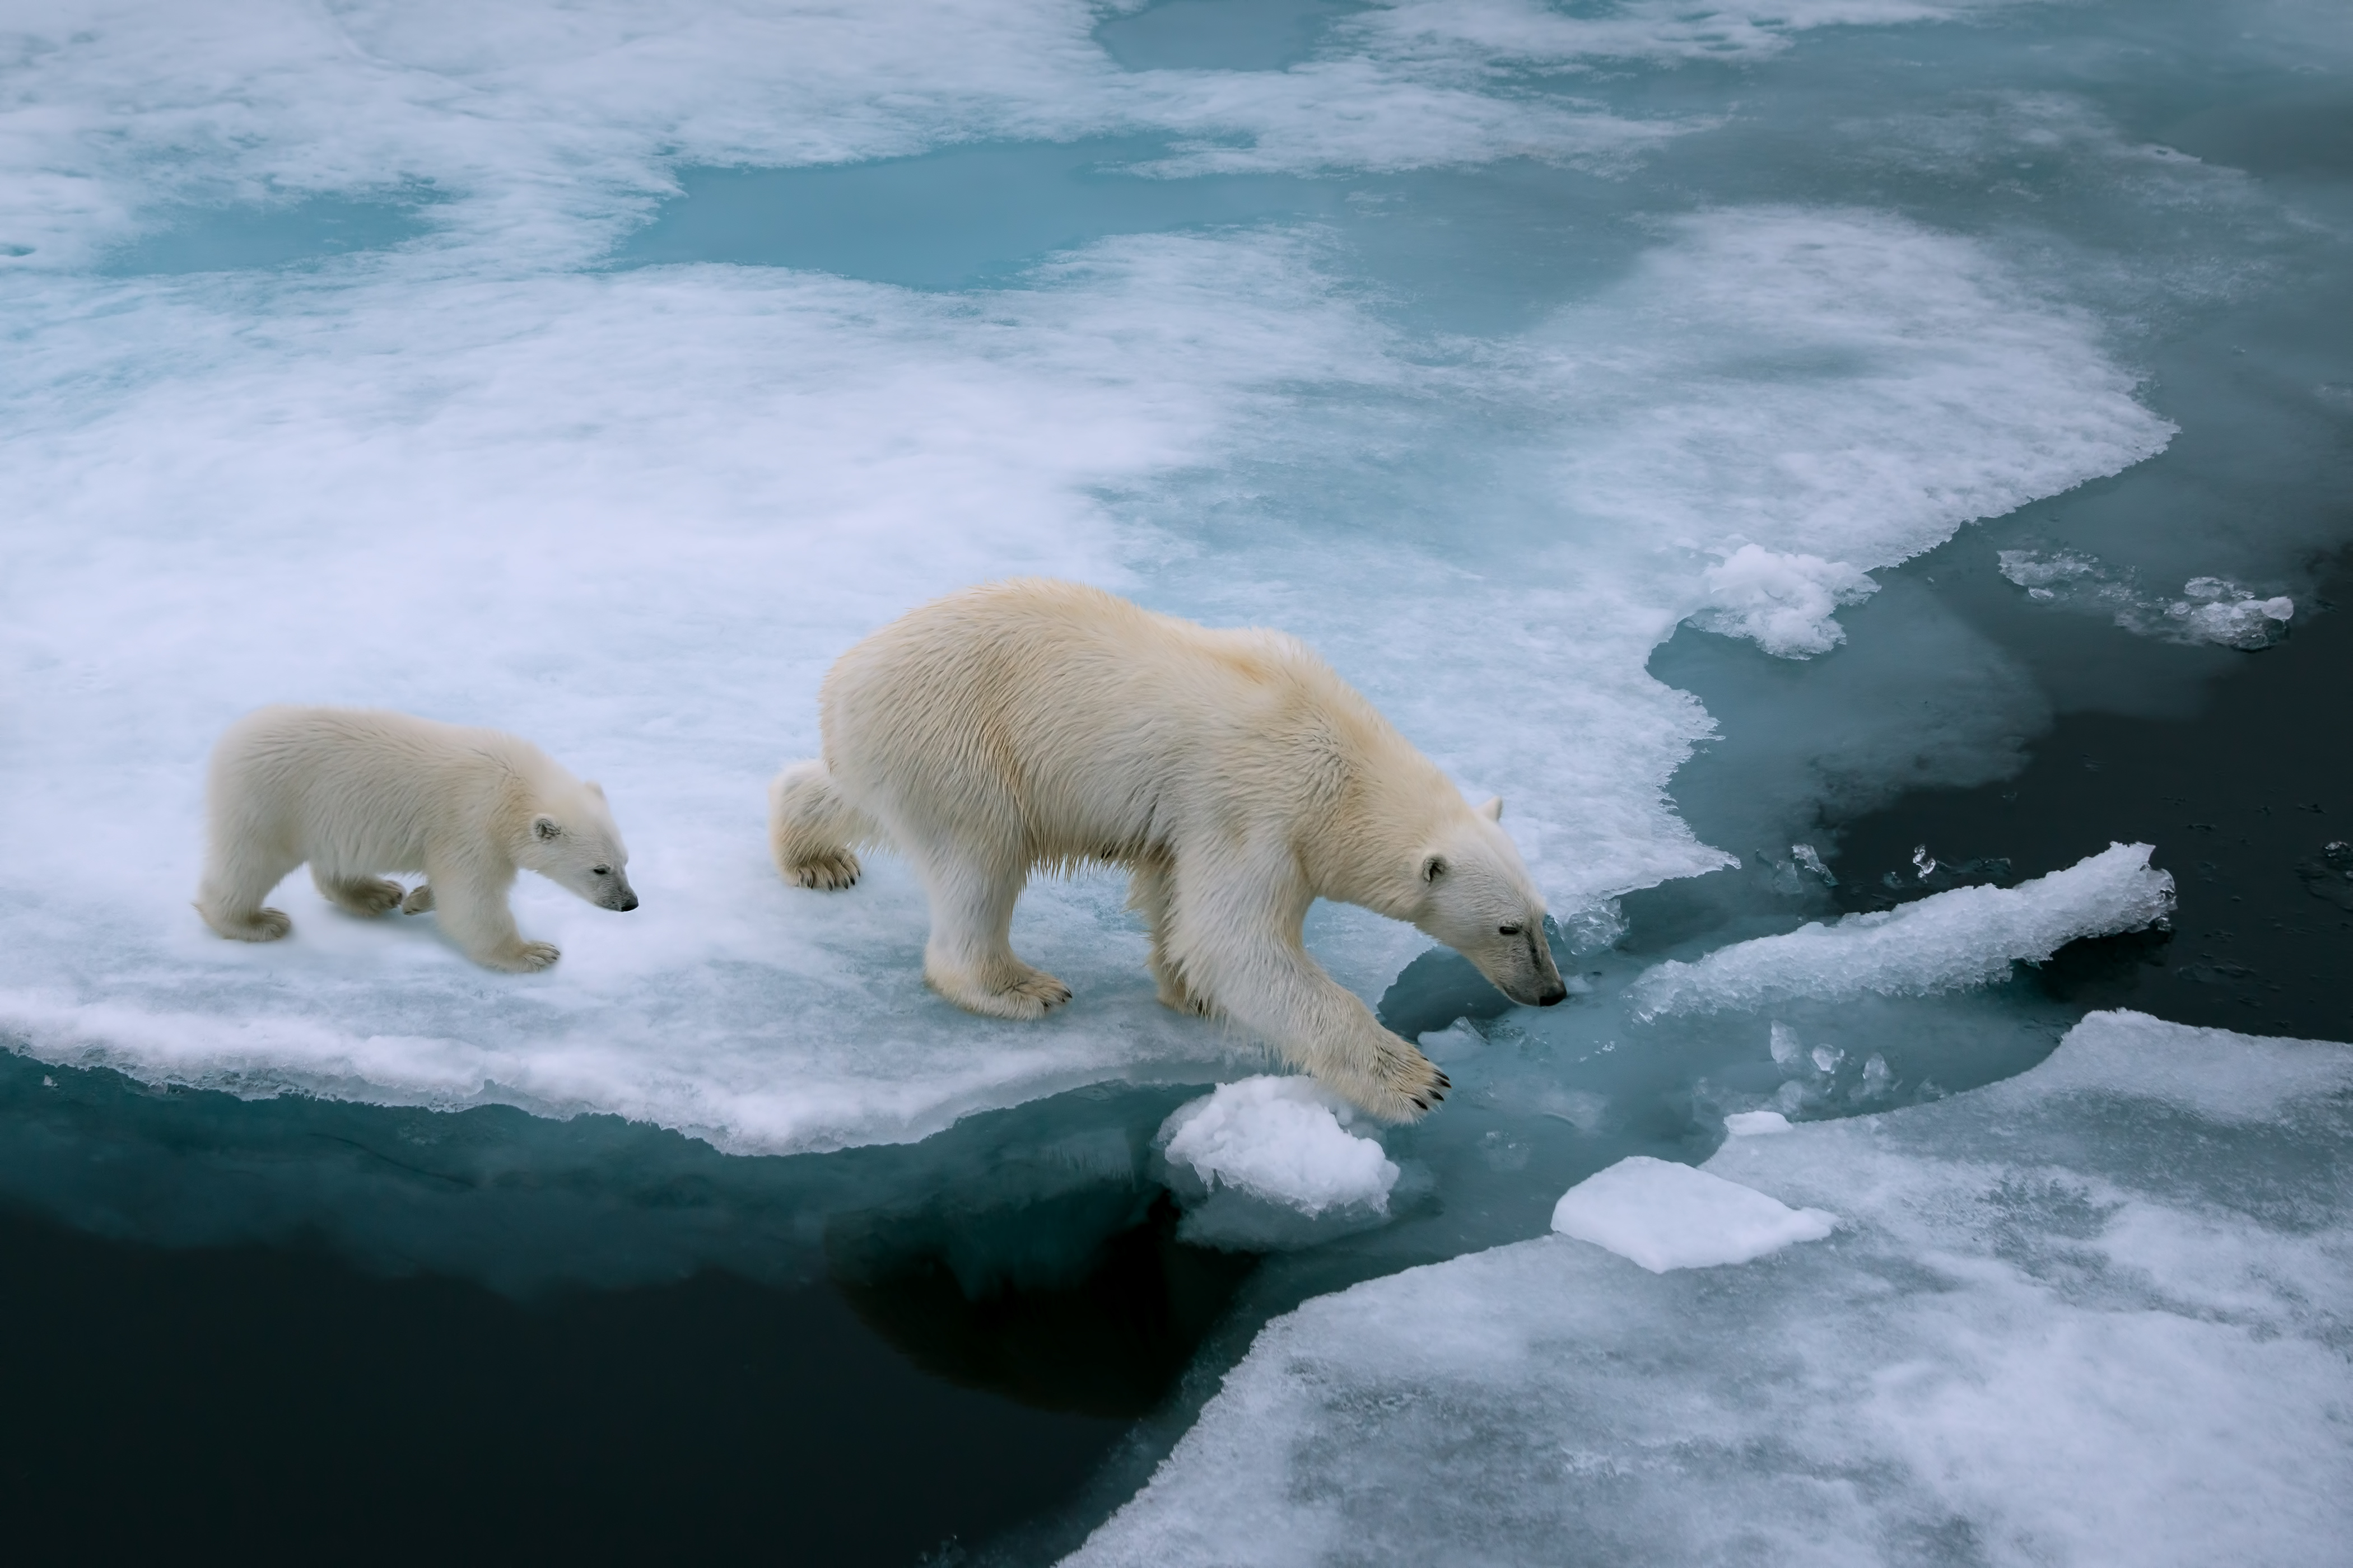 Polar bear mum and cub walking across melting ice caps